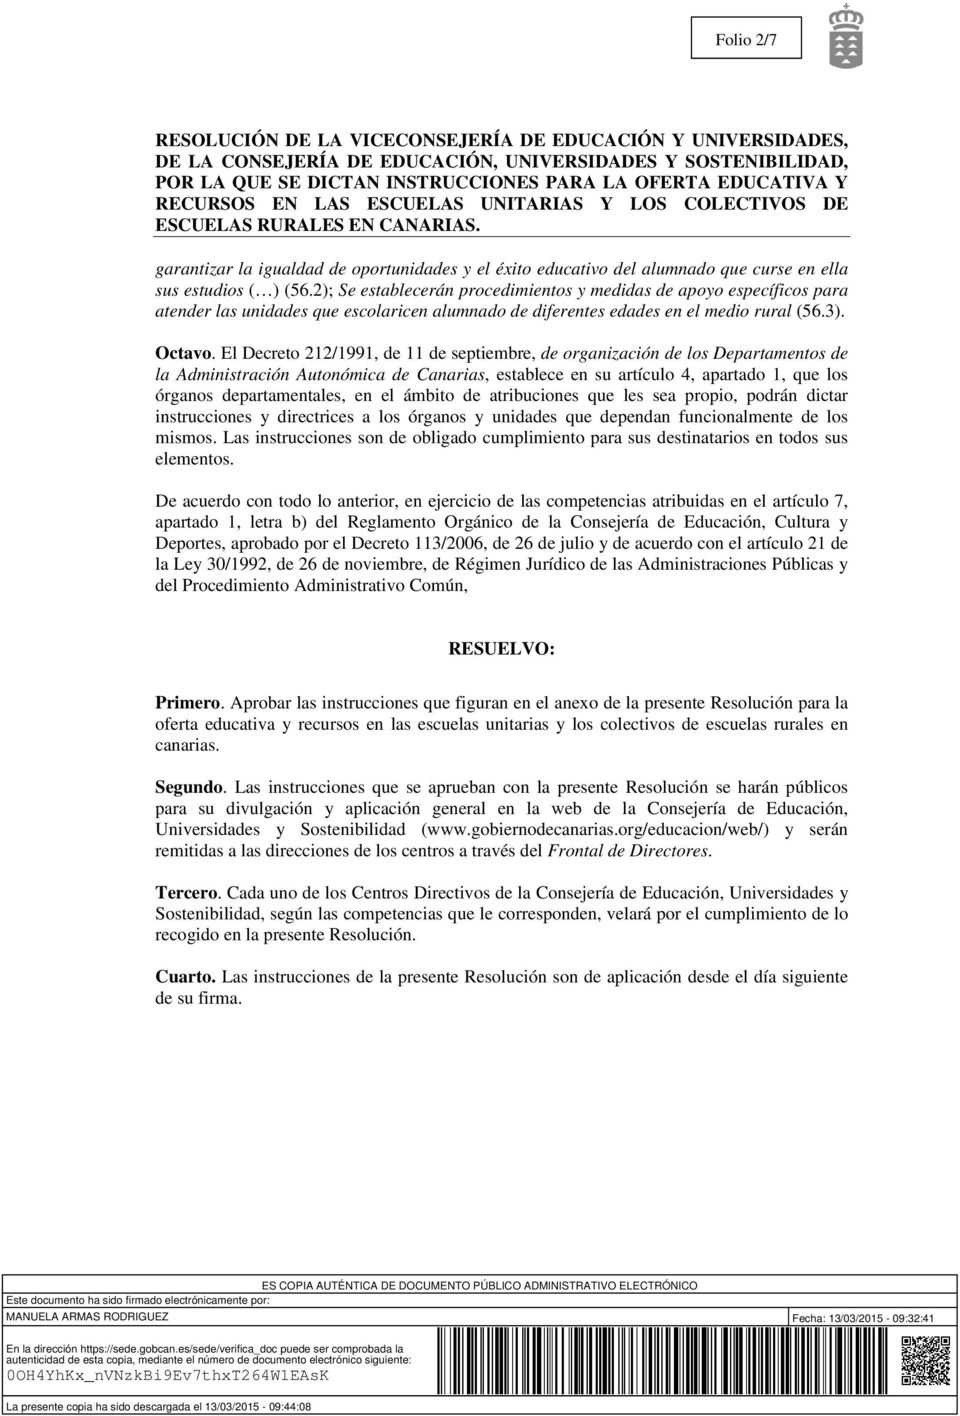 El Decreto 212/1991, de 11 de septiembre, de organización de los Departamentos de la Administración Autonómica de Canarias, establece en su artículo 4, apartado 1, que los órganos departamentales, en